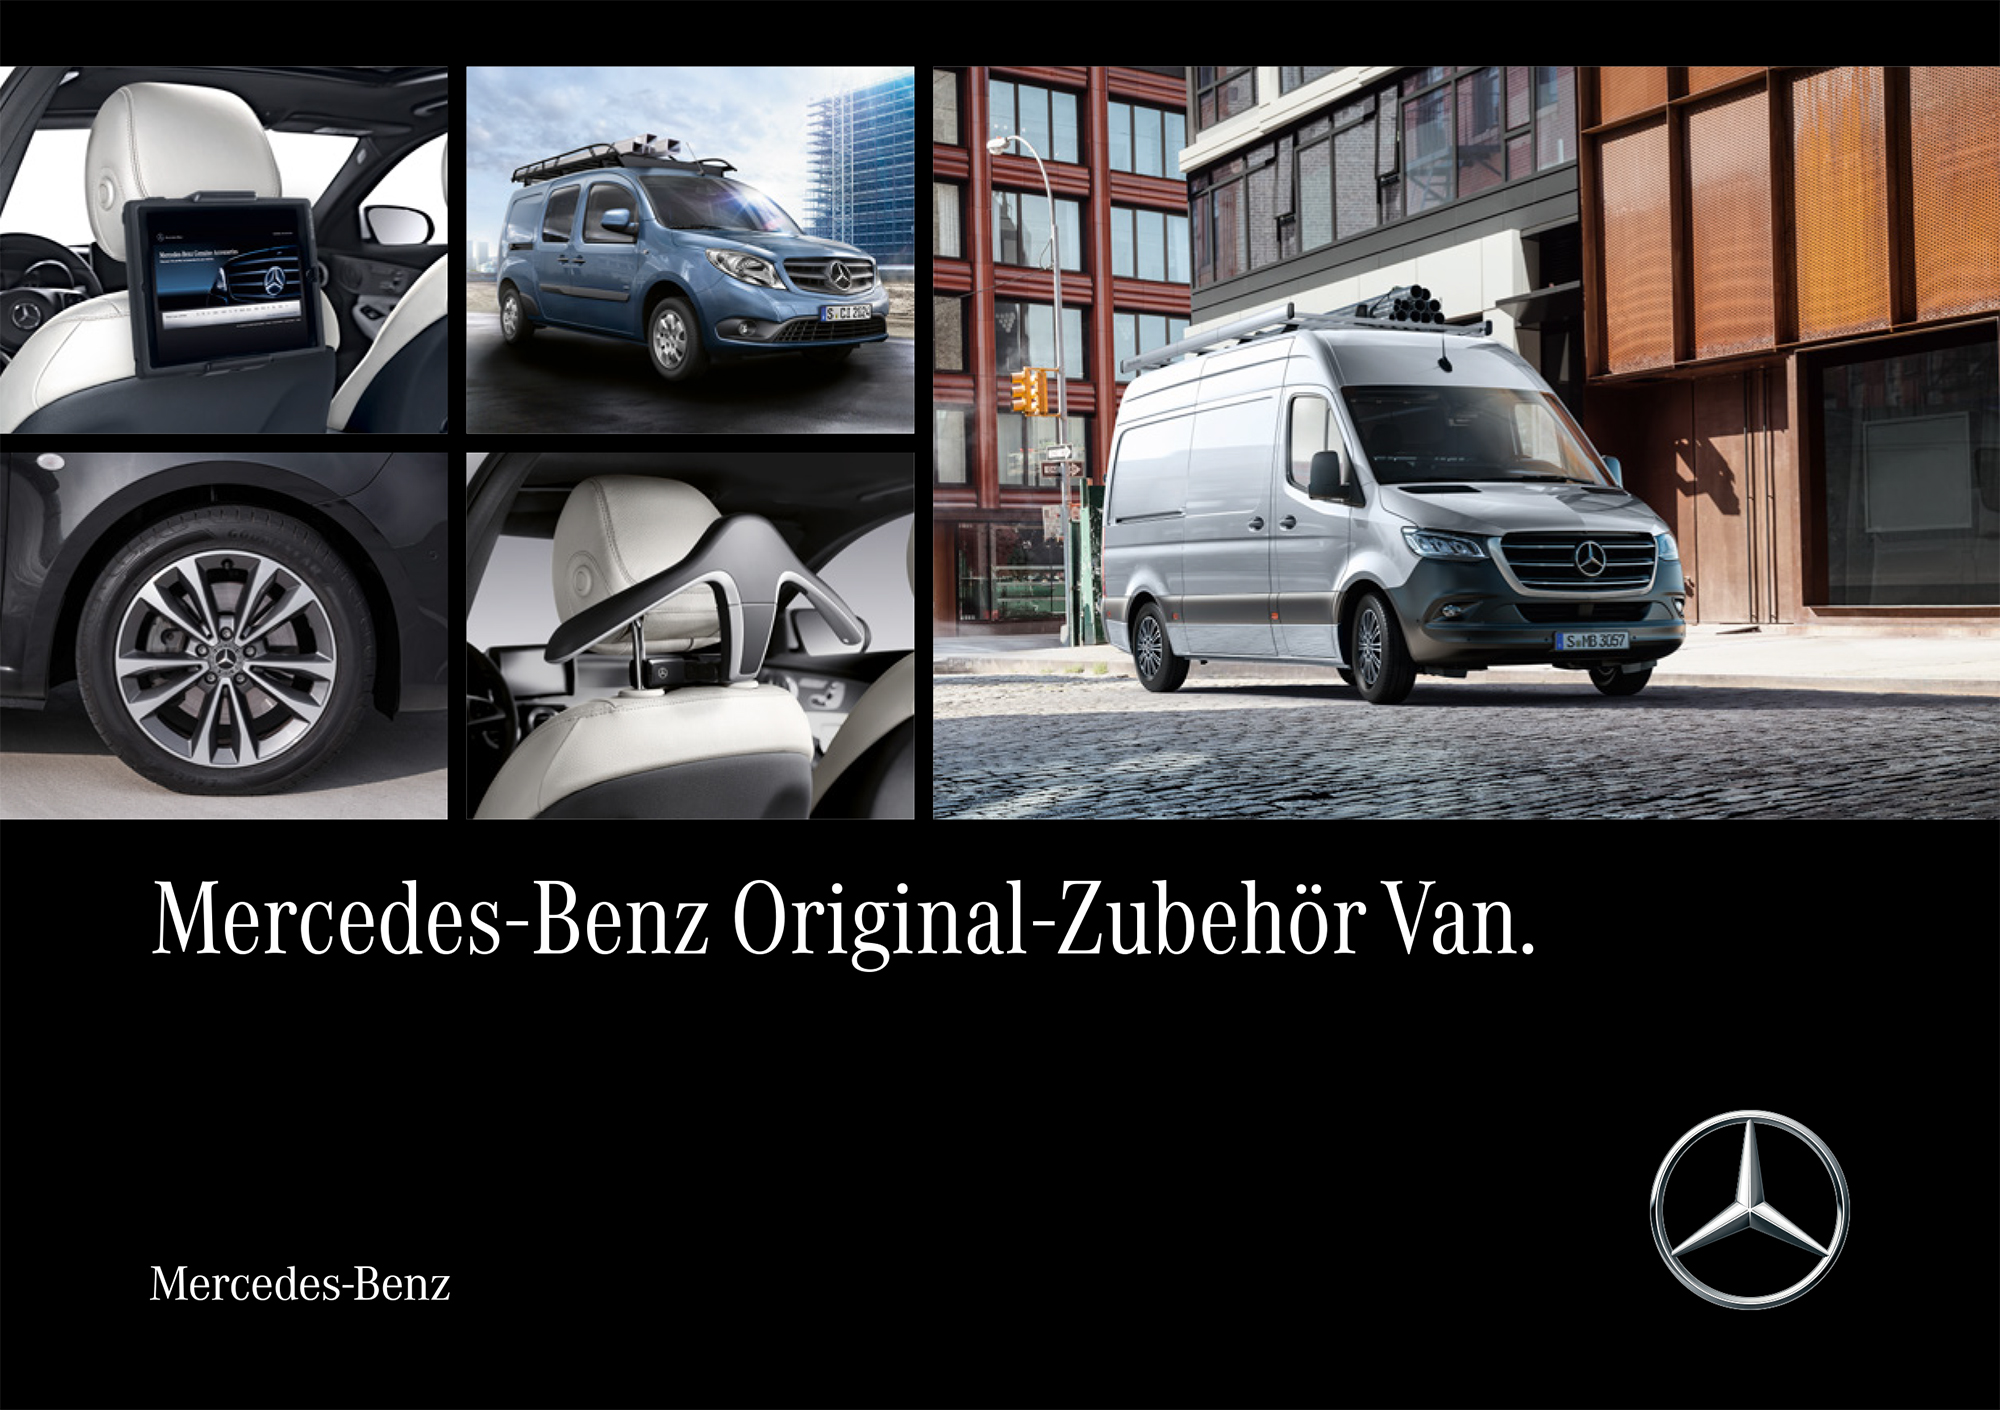 https://www.ahconline.de/WordPressAHC2023/wp-content/uploads/2023/05/Bild_Mercedes-Benz-Original-Zubehoer-Van-Transporter.jpg